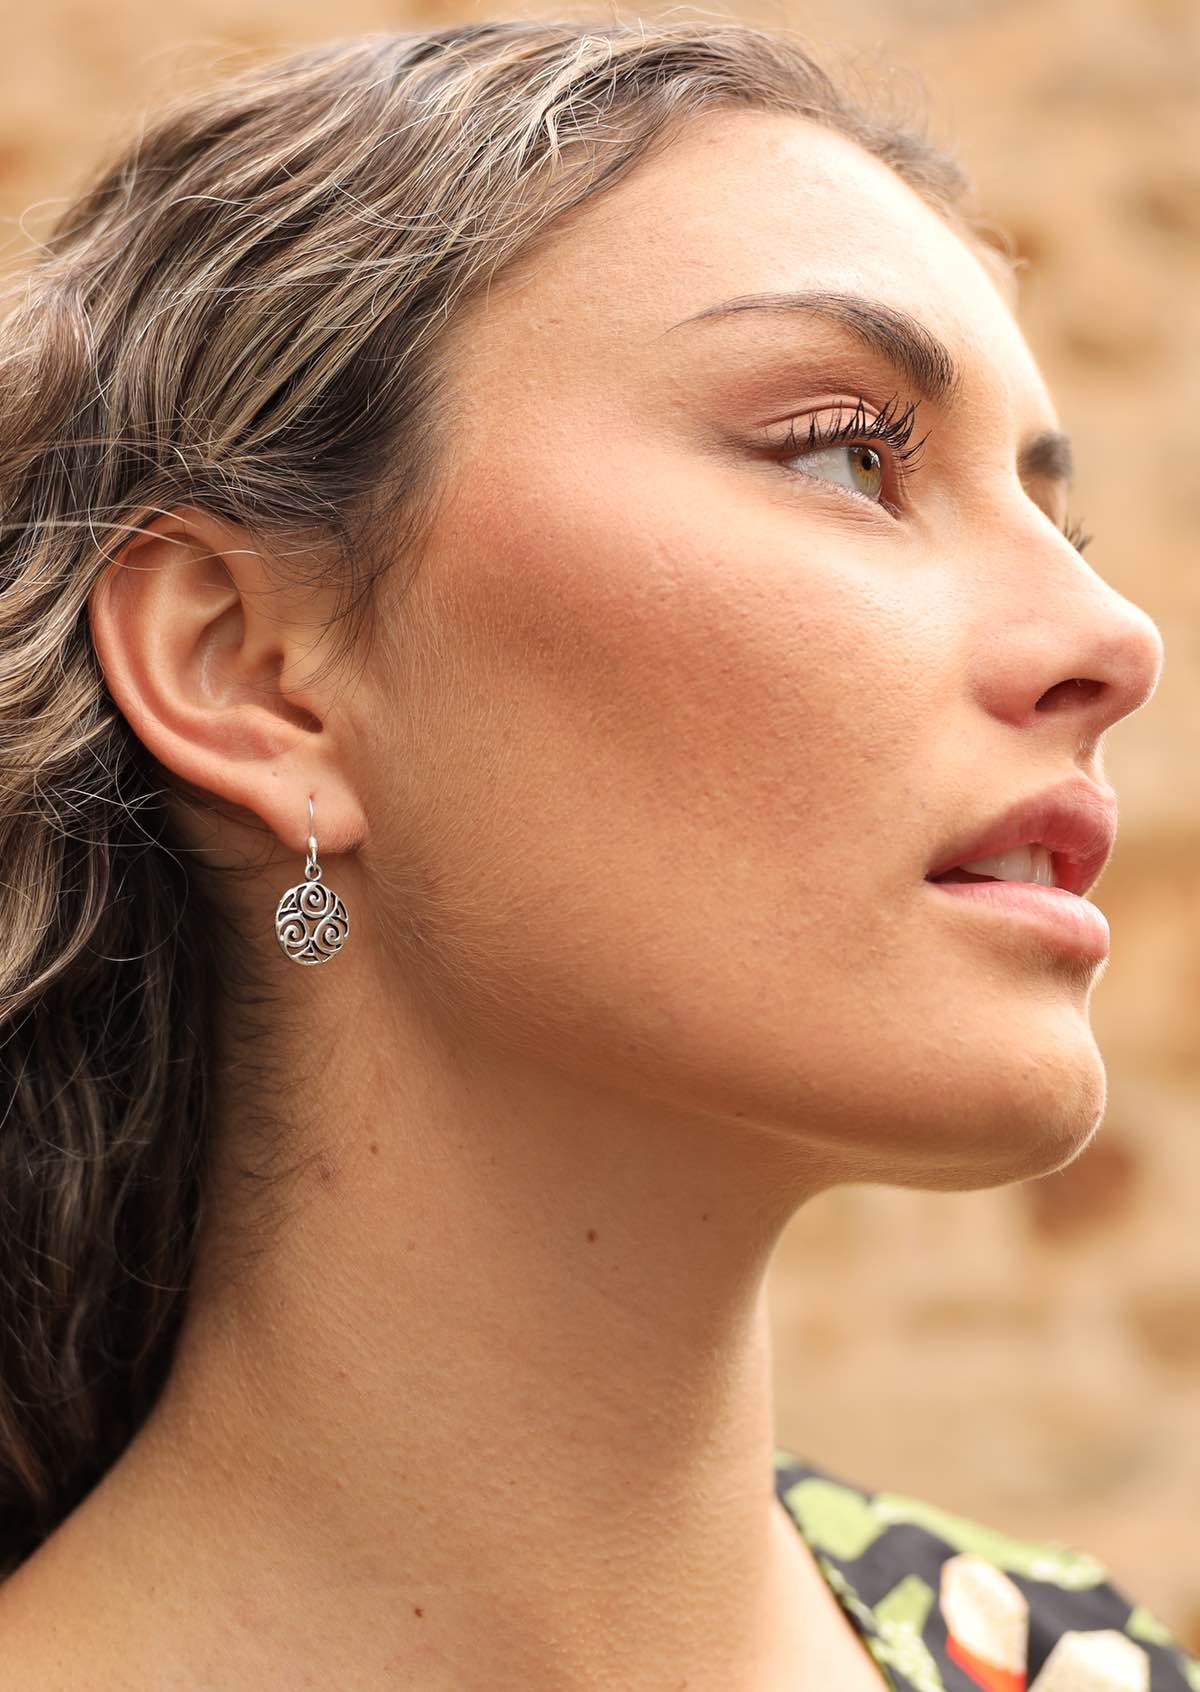 Woman wearing silver Celtic earring